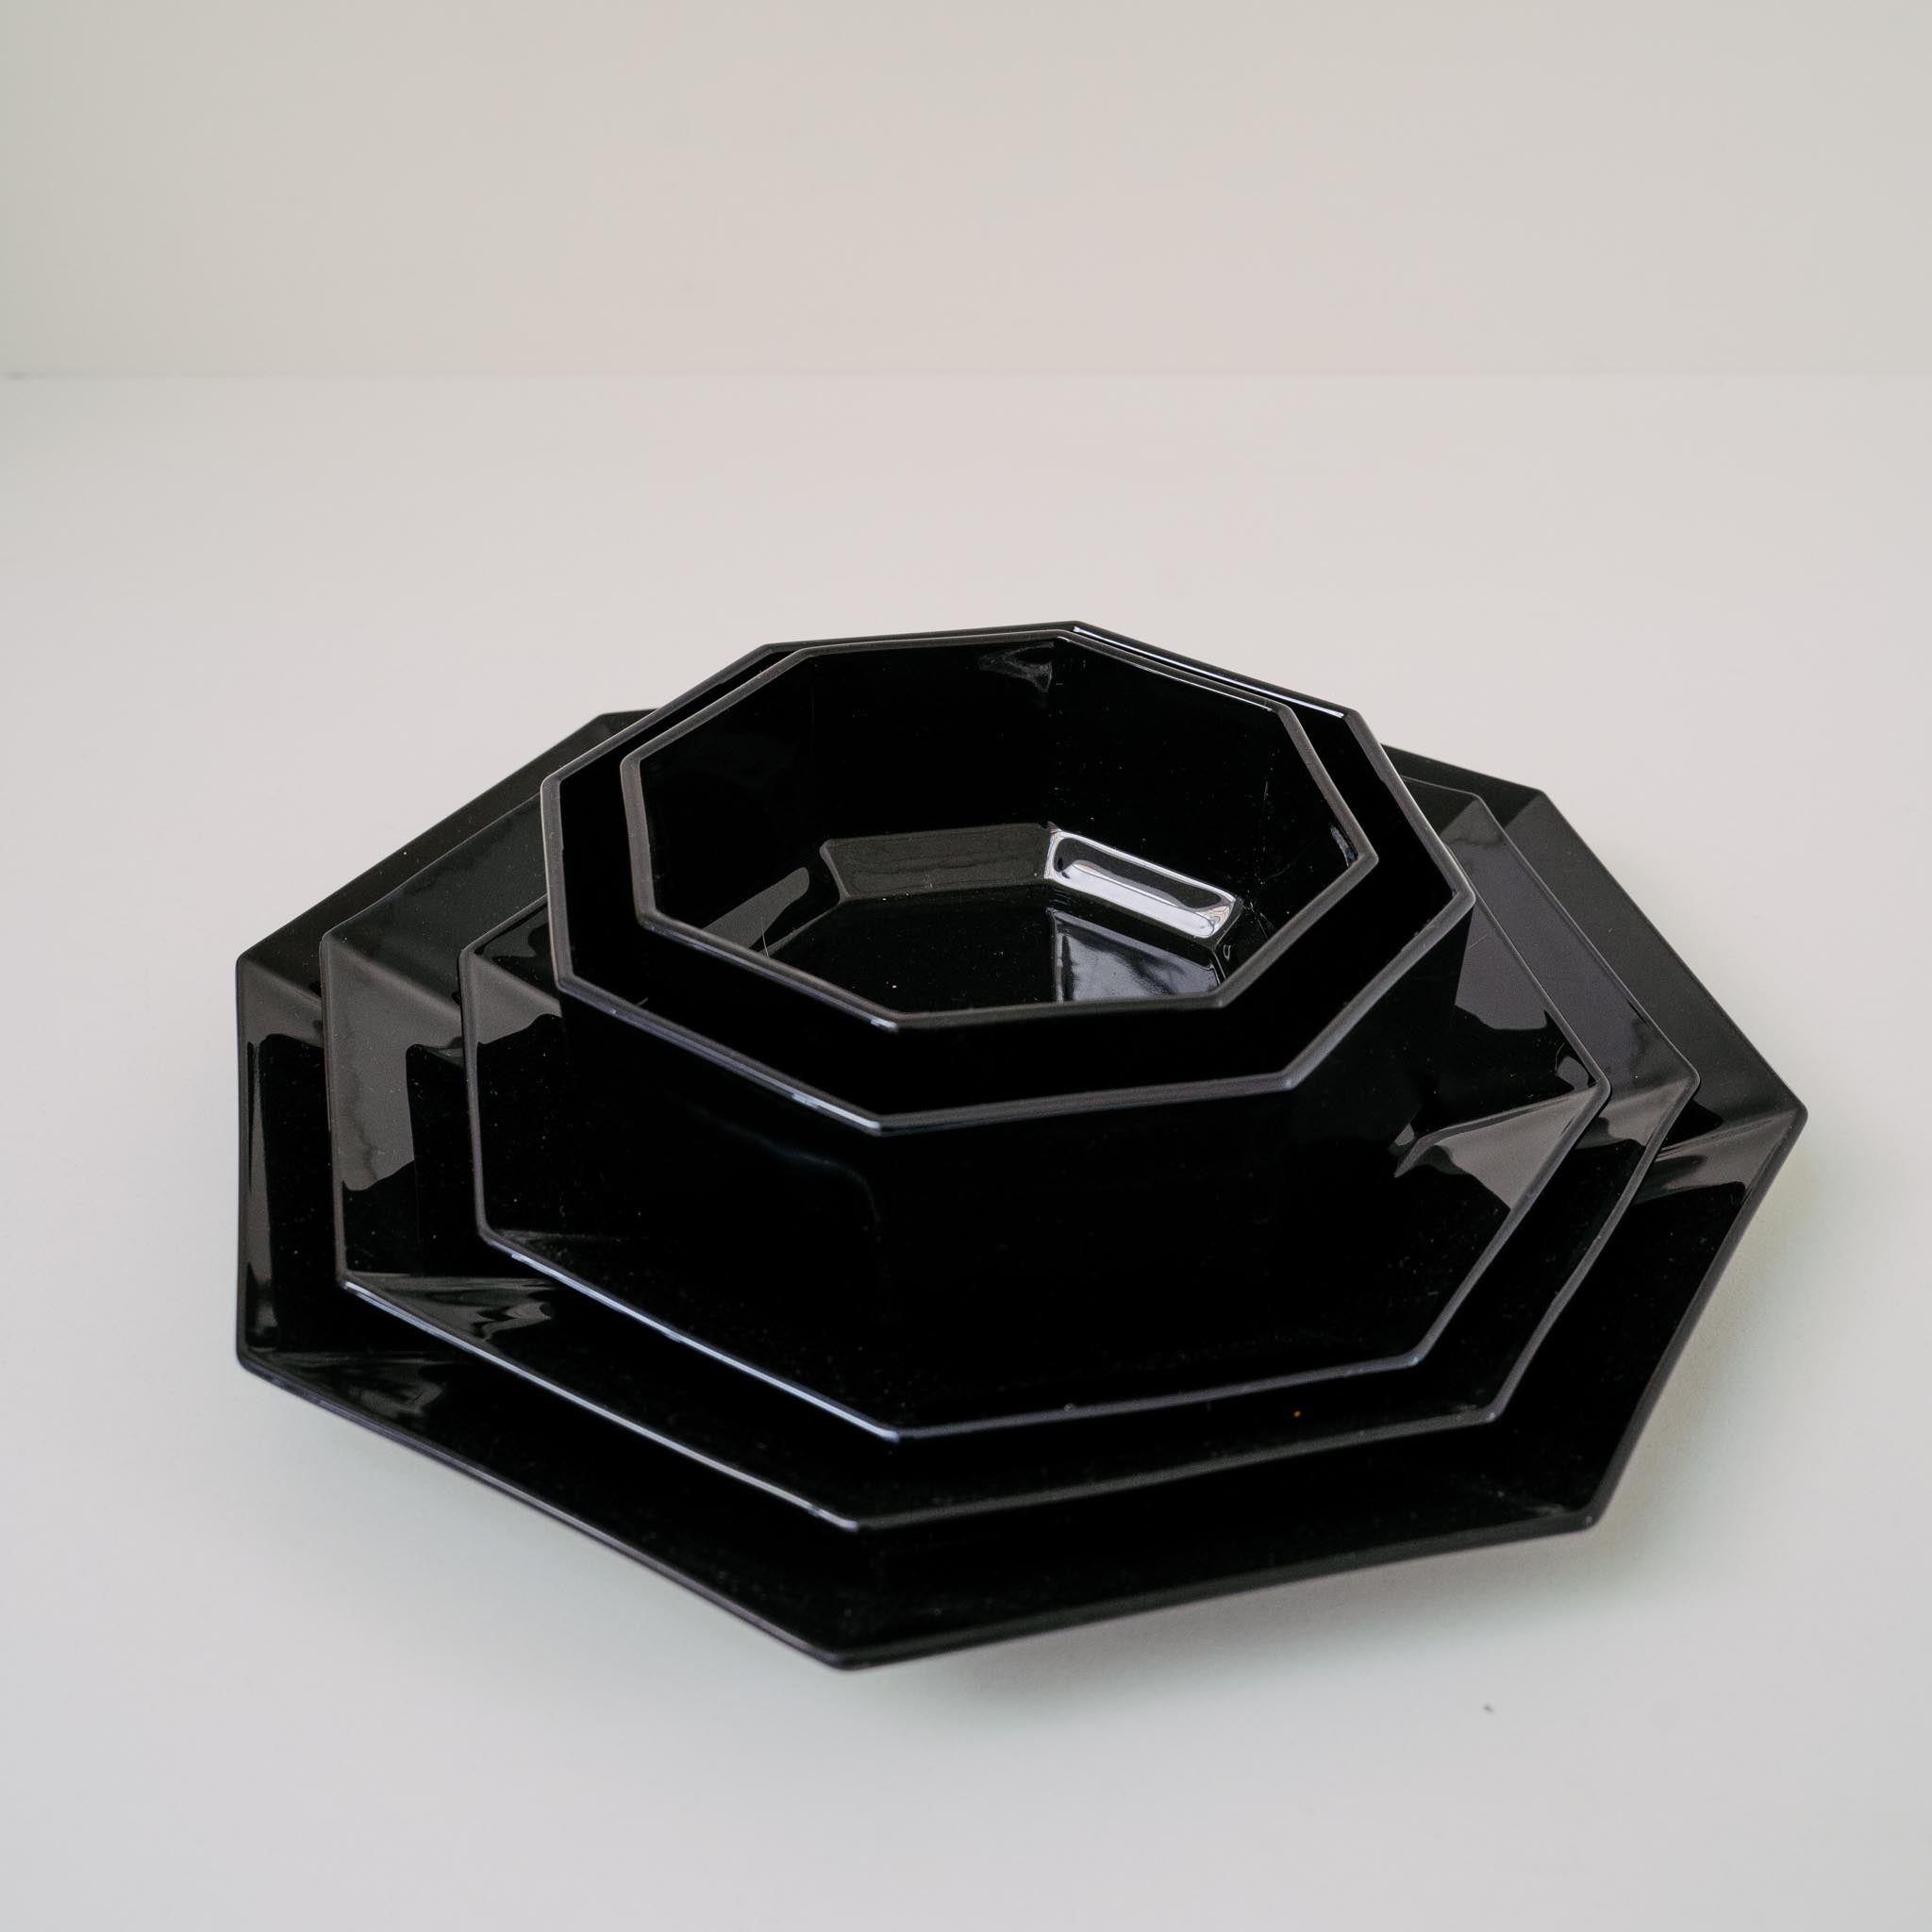 Vintage Arcoroc Octime Black Bowl 14cm